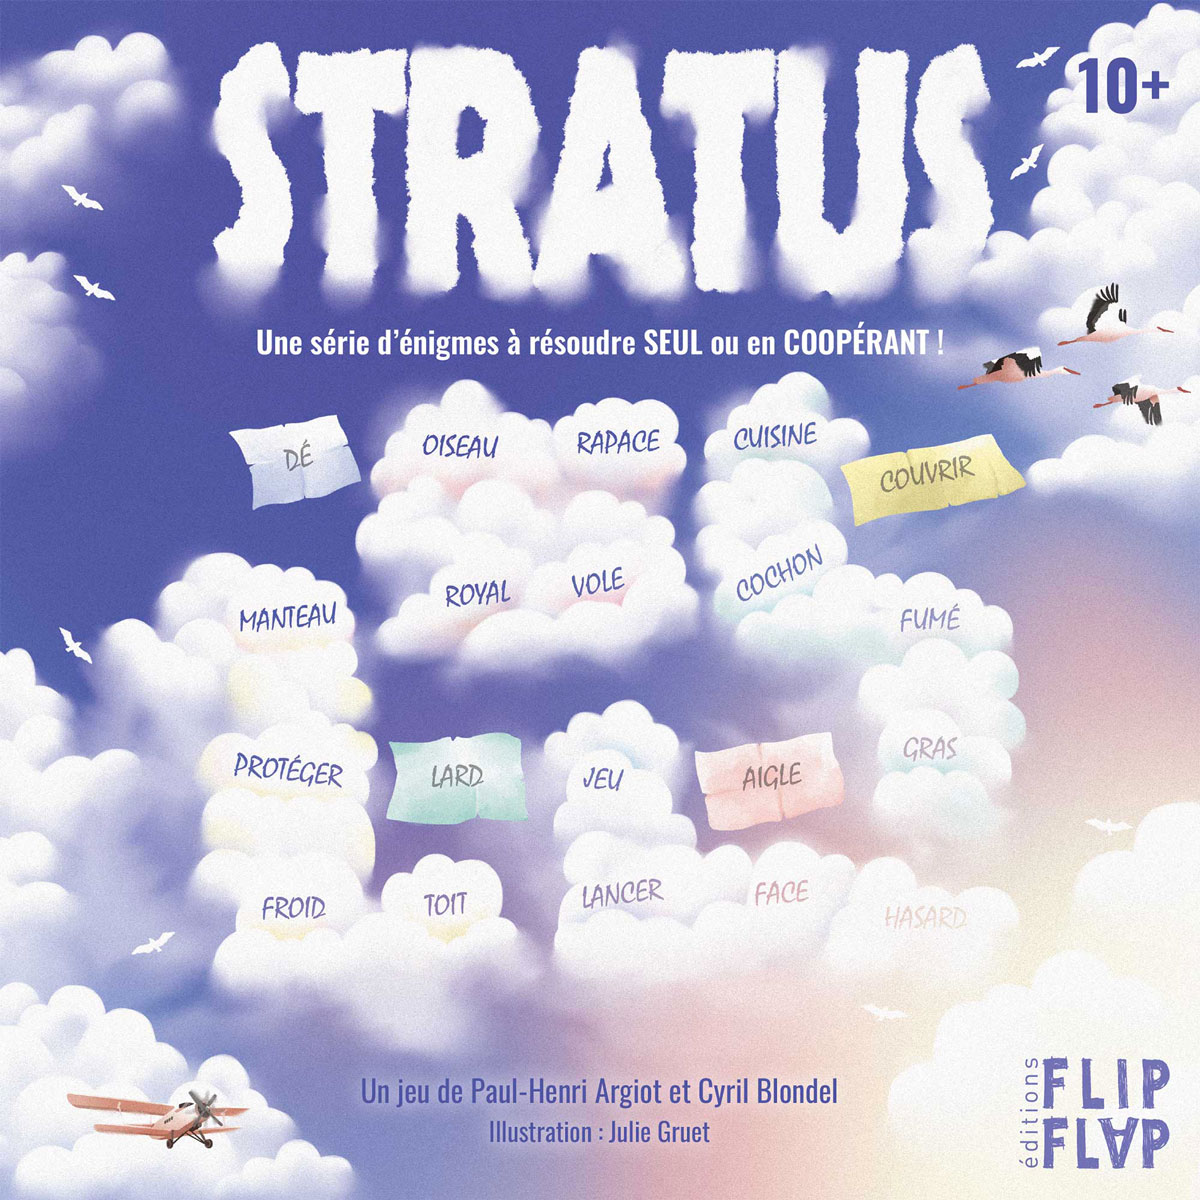 Visuel du Jeu "Stratus" créé par Flip Flap Editions